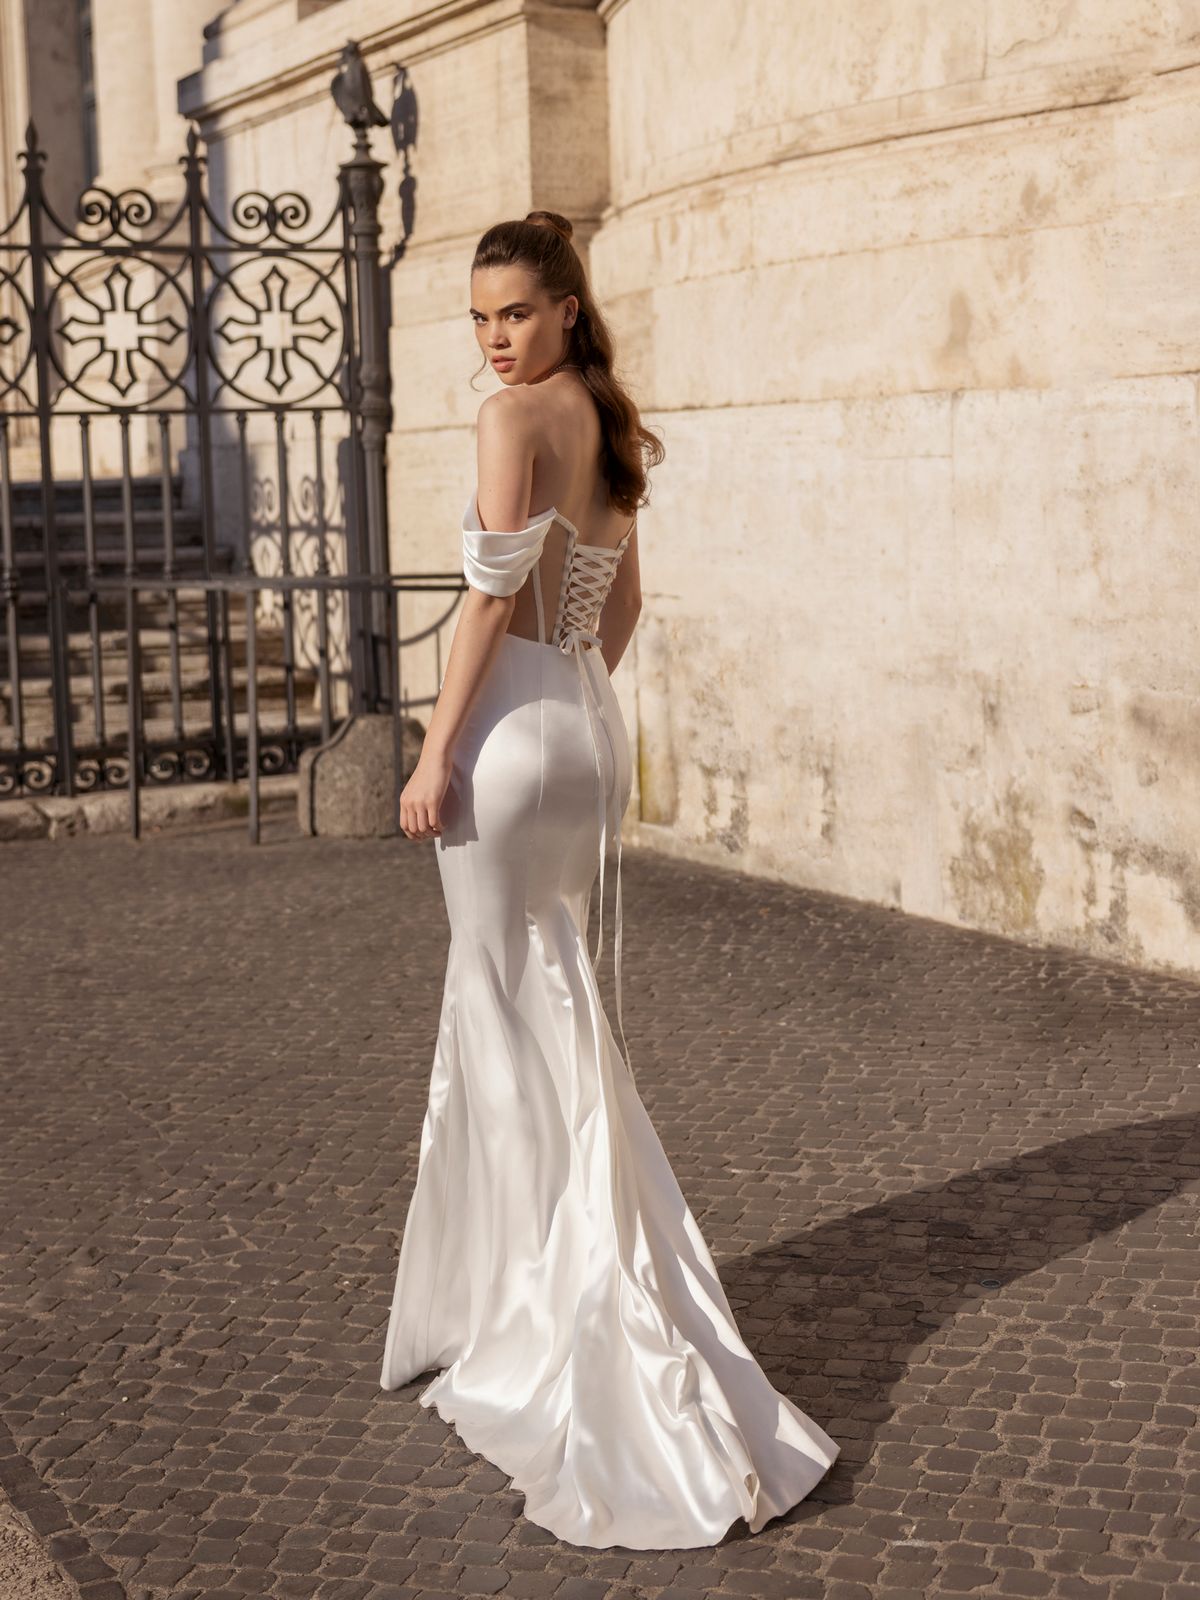 Plus size, fitted wedding dress Gracia by blammo-biamo 1